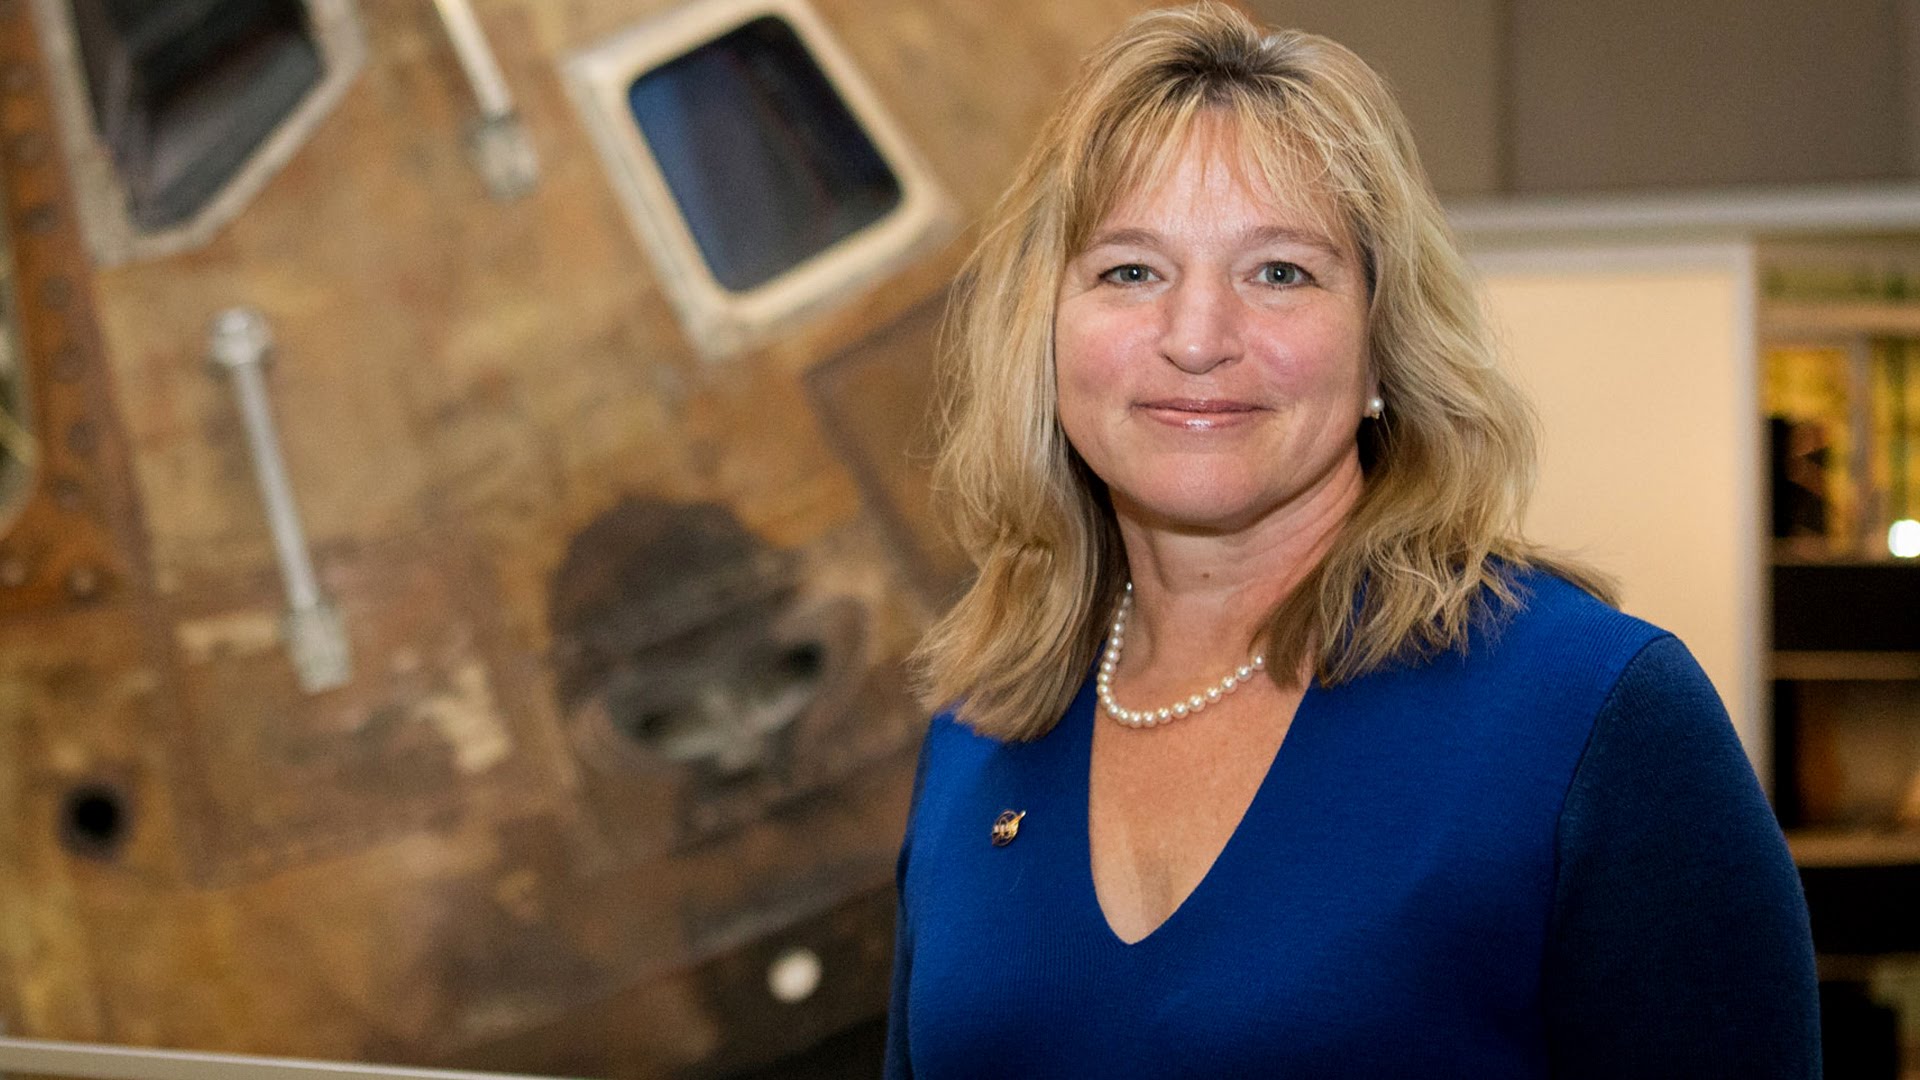 NASA’s Chief Scientist Ellen Stofan